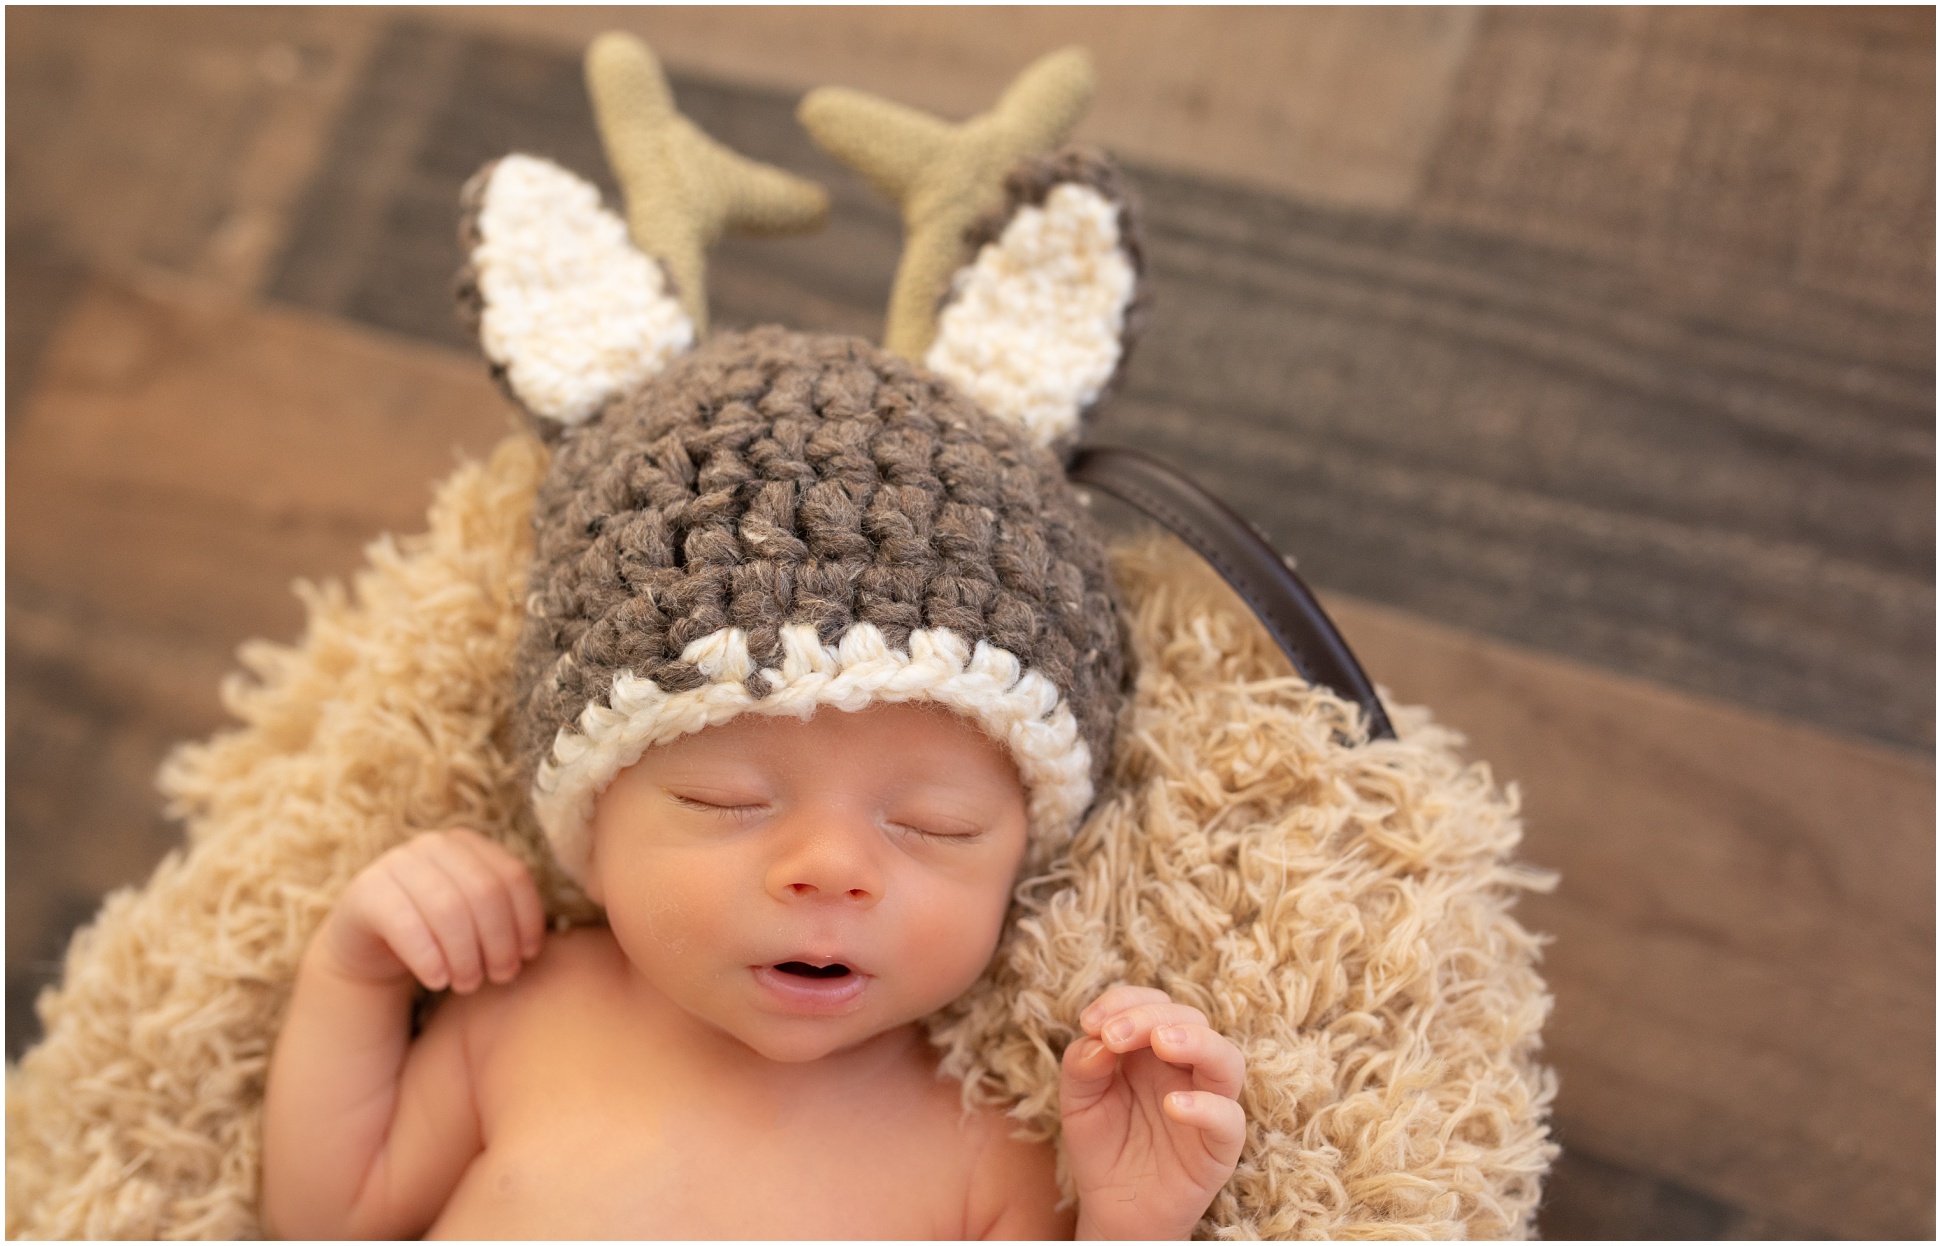 AZ Newborn Baby Boy Wearing a Knitted Deer Outfit